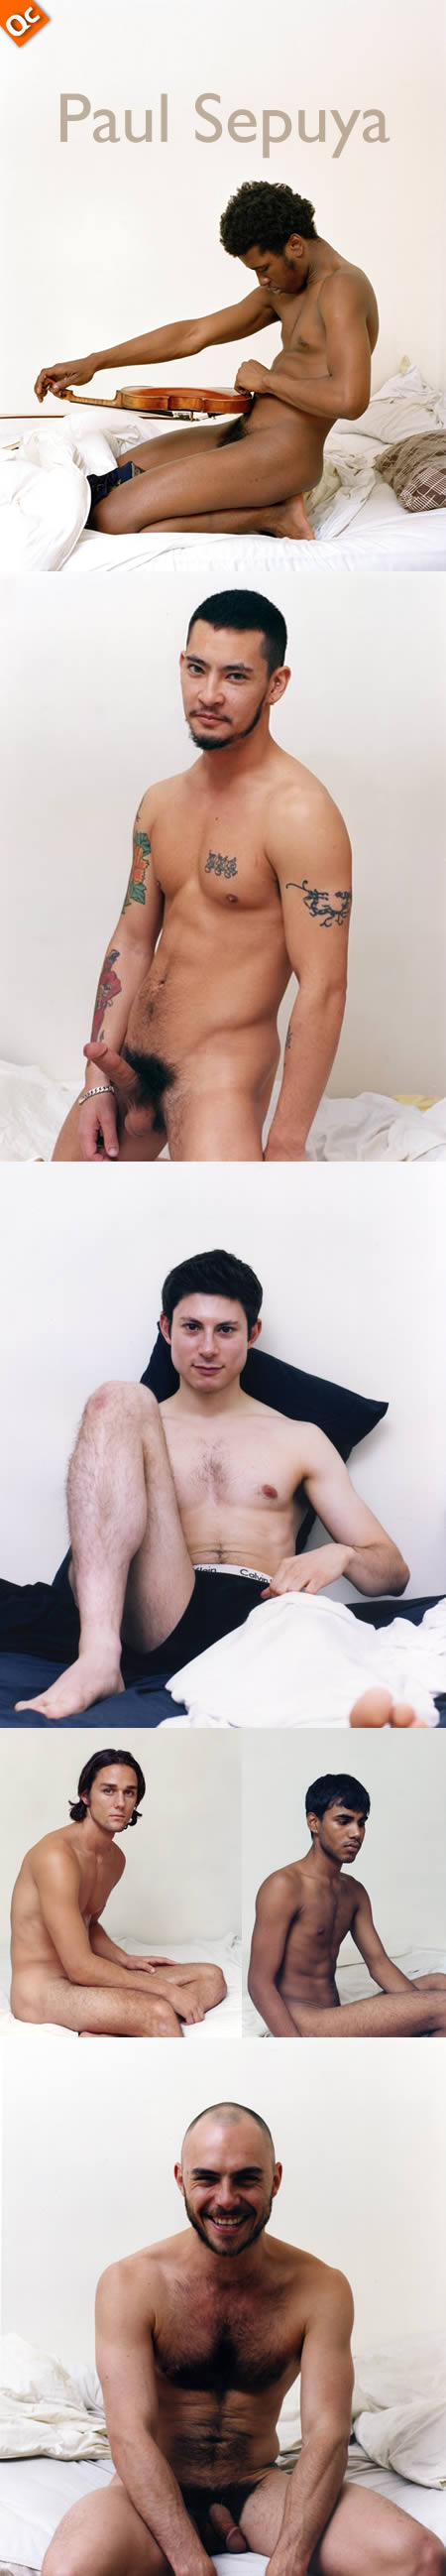 Los Desnudos de Paul Sepuya